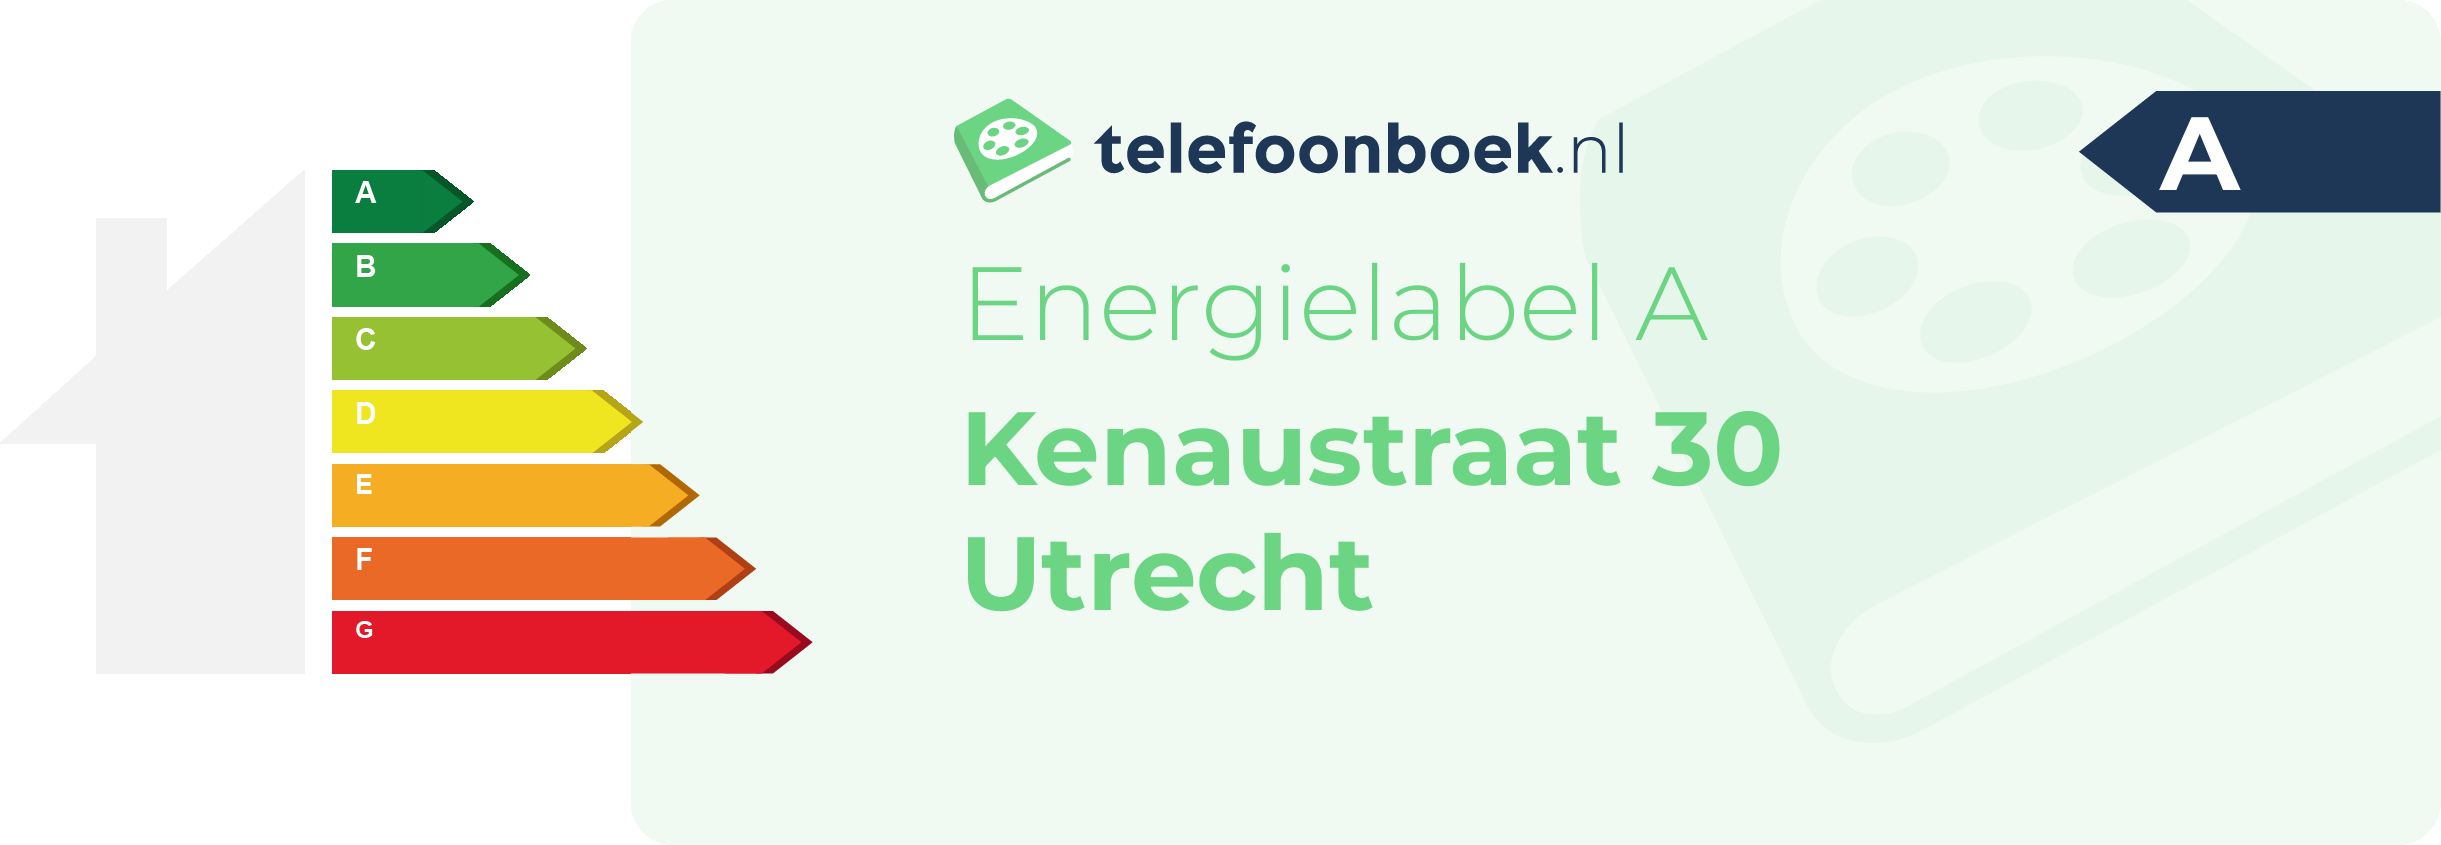 Energielabel Kenaustraat 30 Utrecht